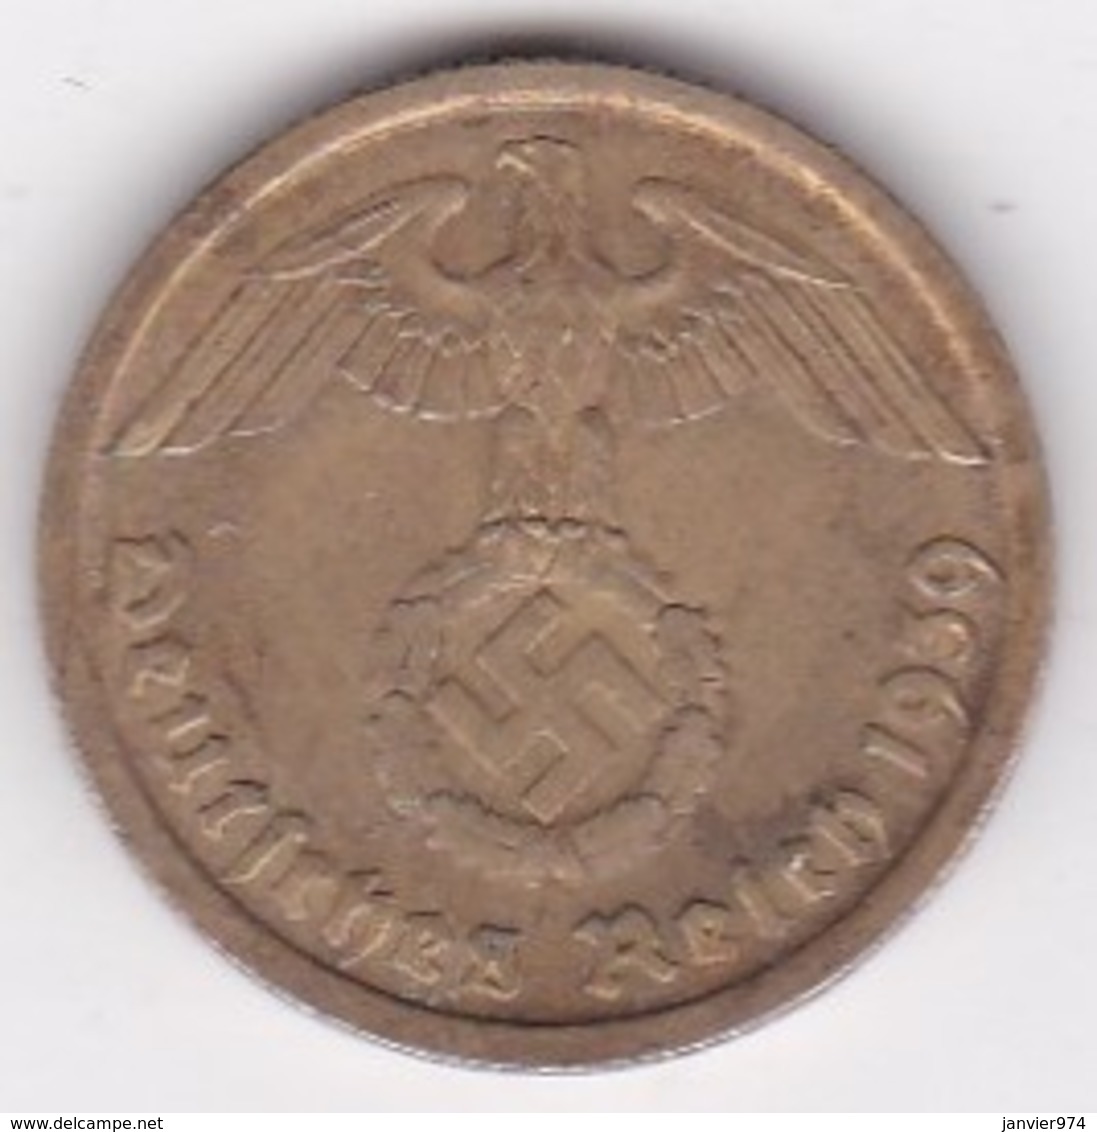 10 Reichspfennig 1939 D (MUNICH) Bronze-aluminium - 10 Reichspfennig